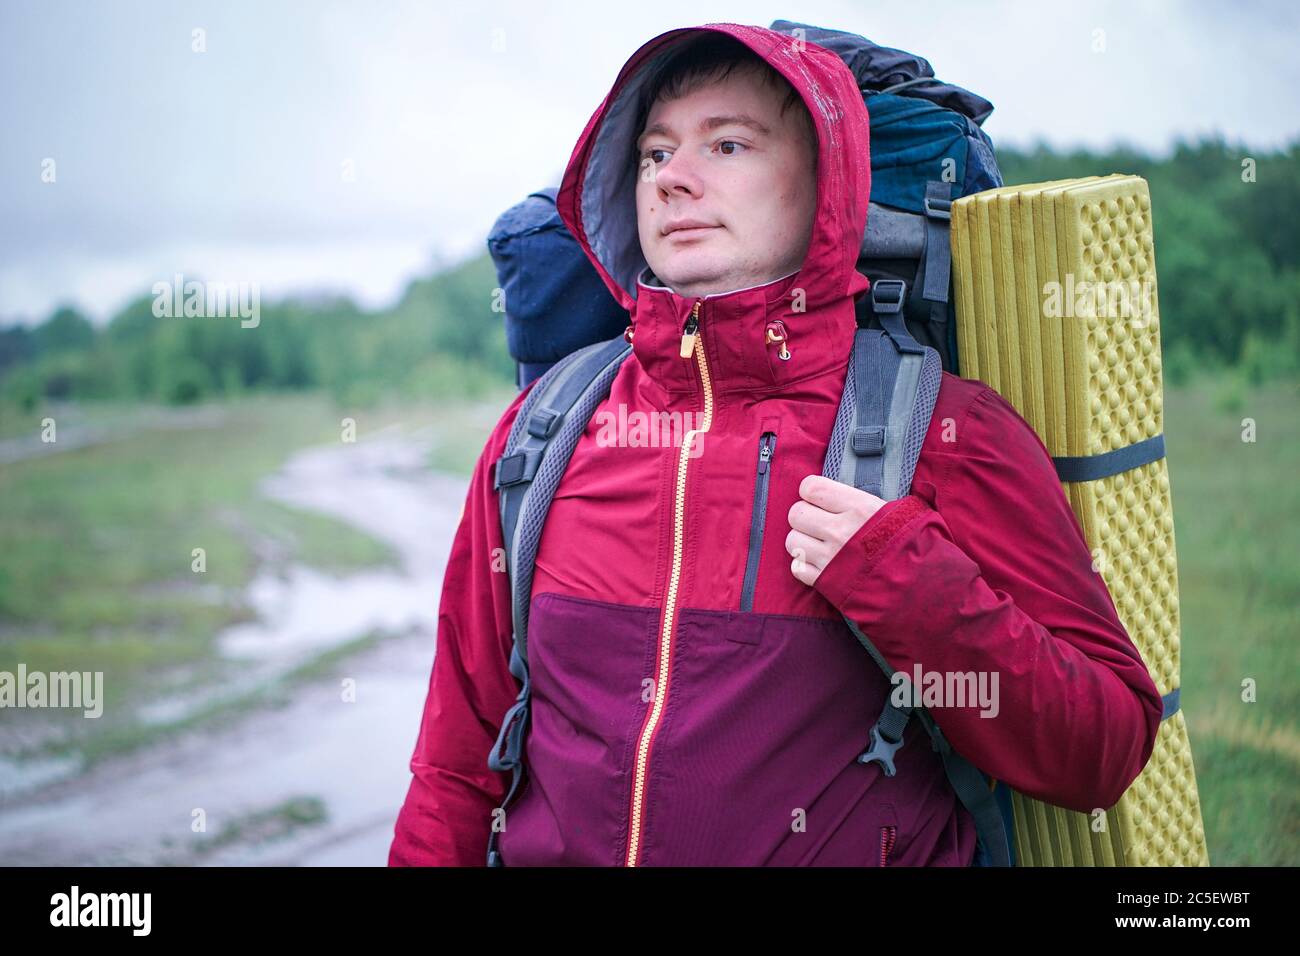 Guy randonneur touristique avec sac à dos et tapis de voyage, dans une veste rouge se tient dans la pluie Banque D'Images